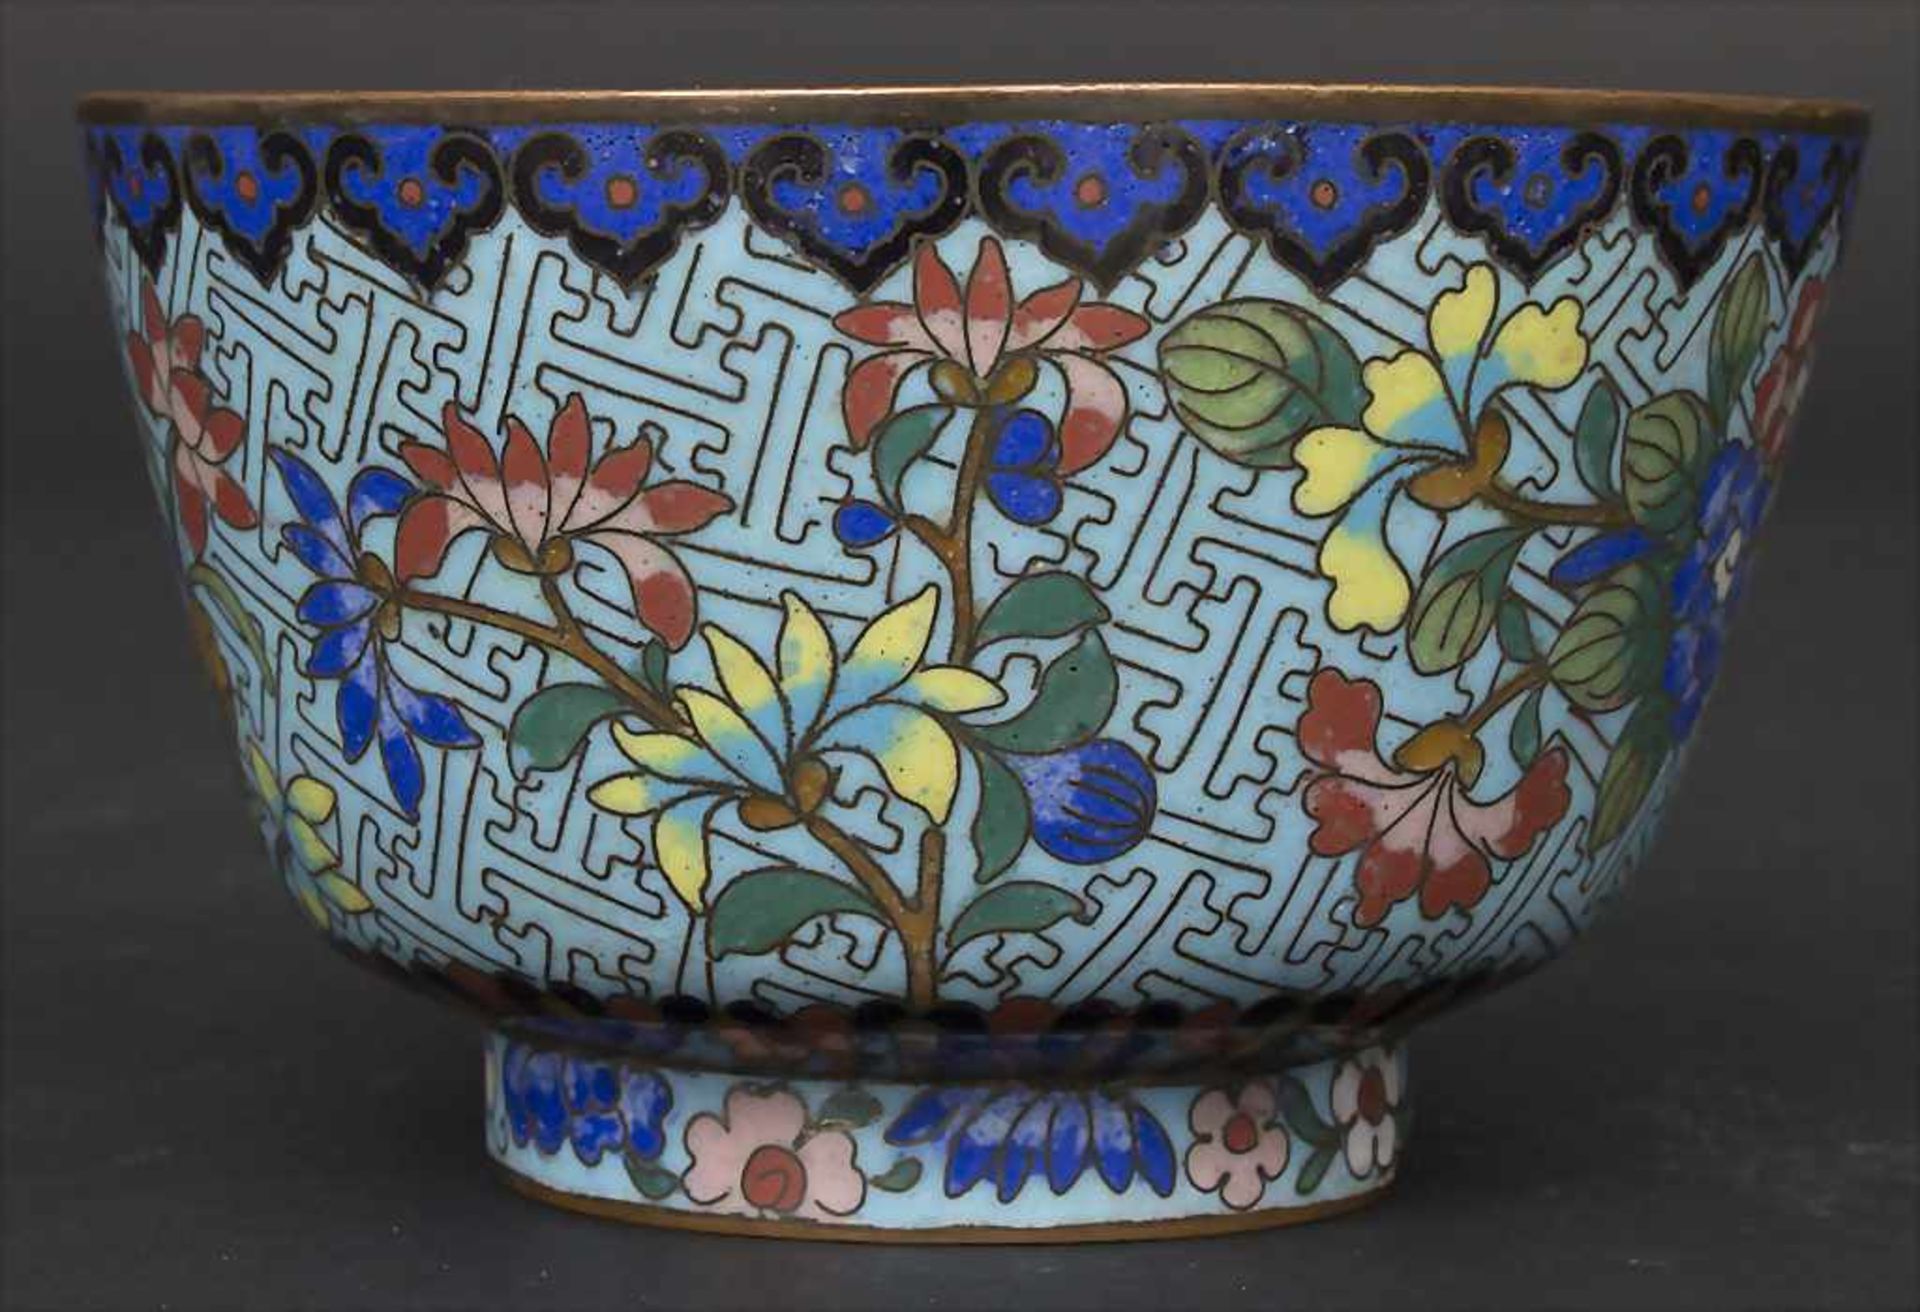 Cloisonné-Kumme 'Blütensträucher' / A Cloisonné bowl 'flowering shrubs', China, um 1900Material: